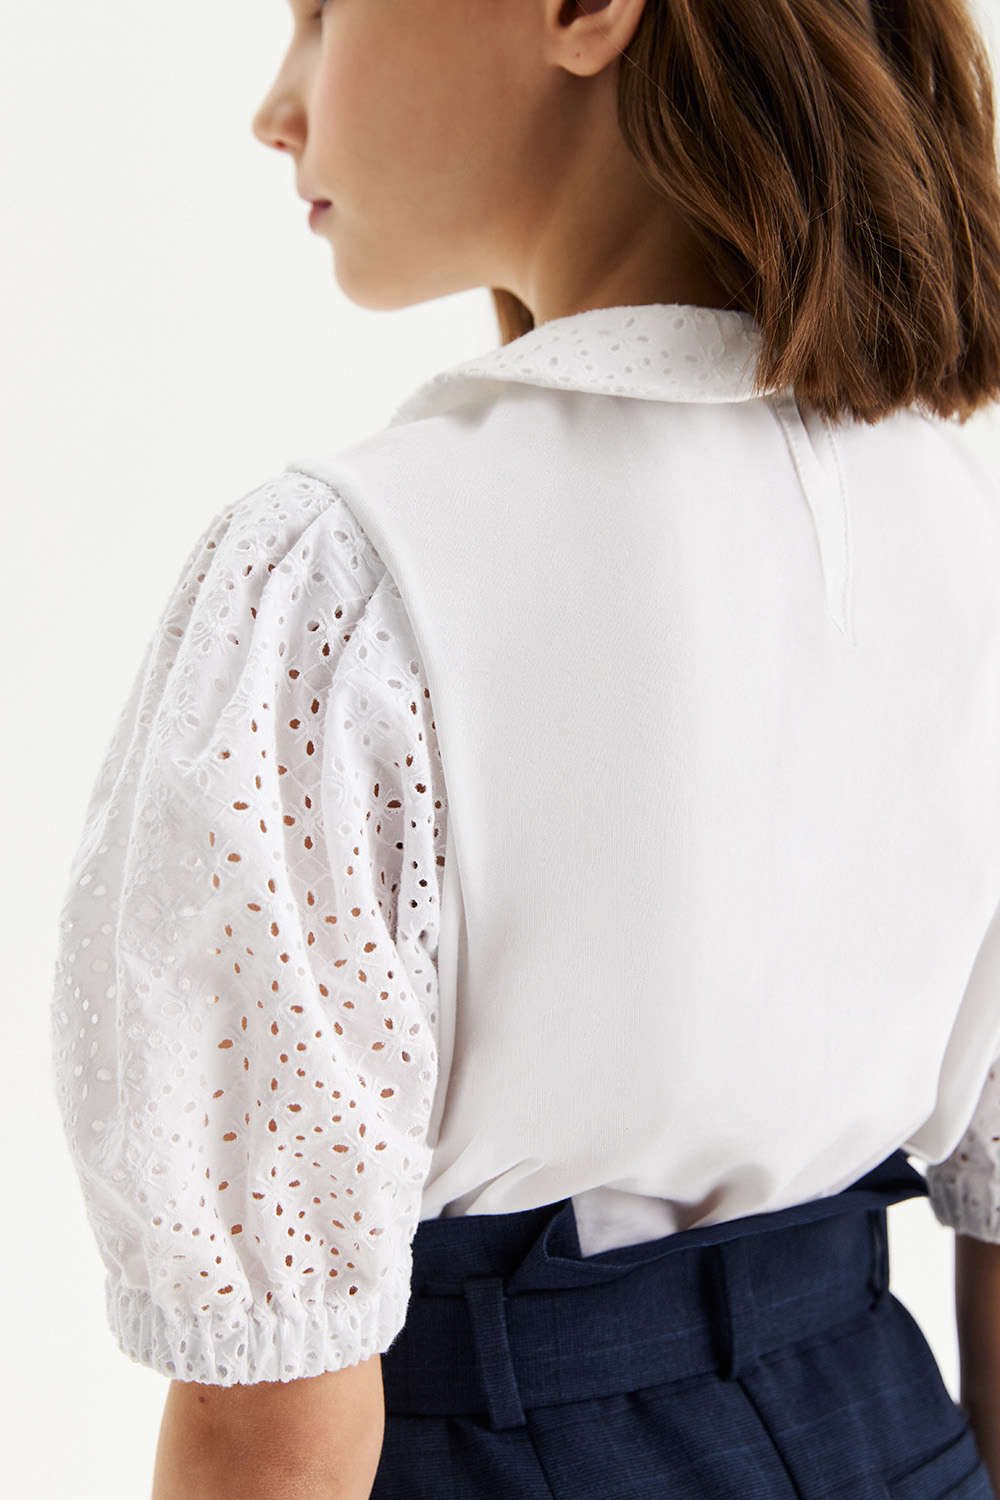 Трикотажная блузка с рукавами-фонариками из шитья "ришелье" (SSFSG-228-22902-200) Silver Spoon